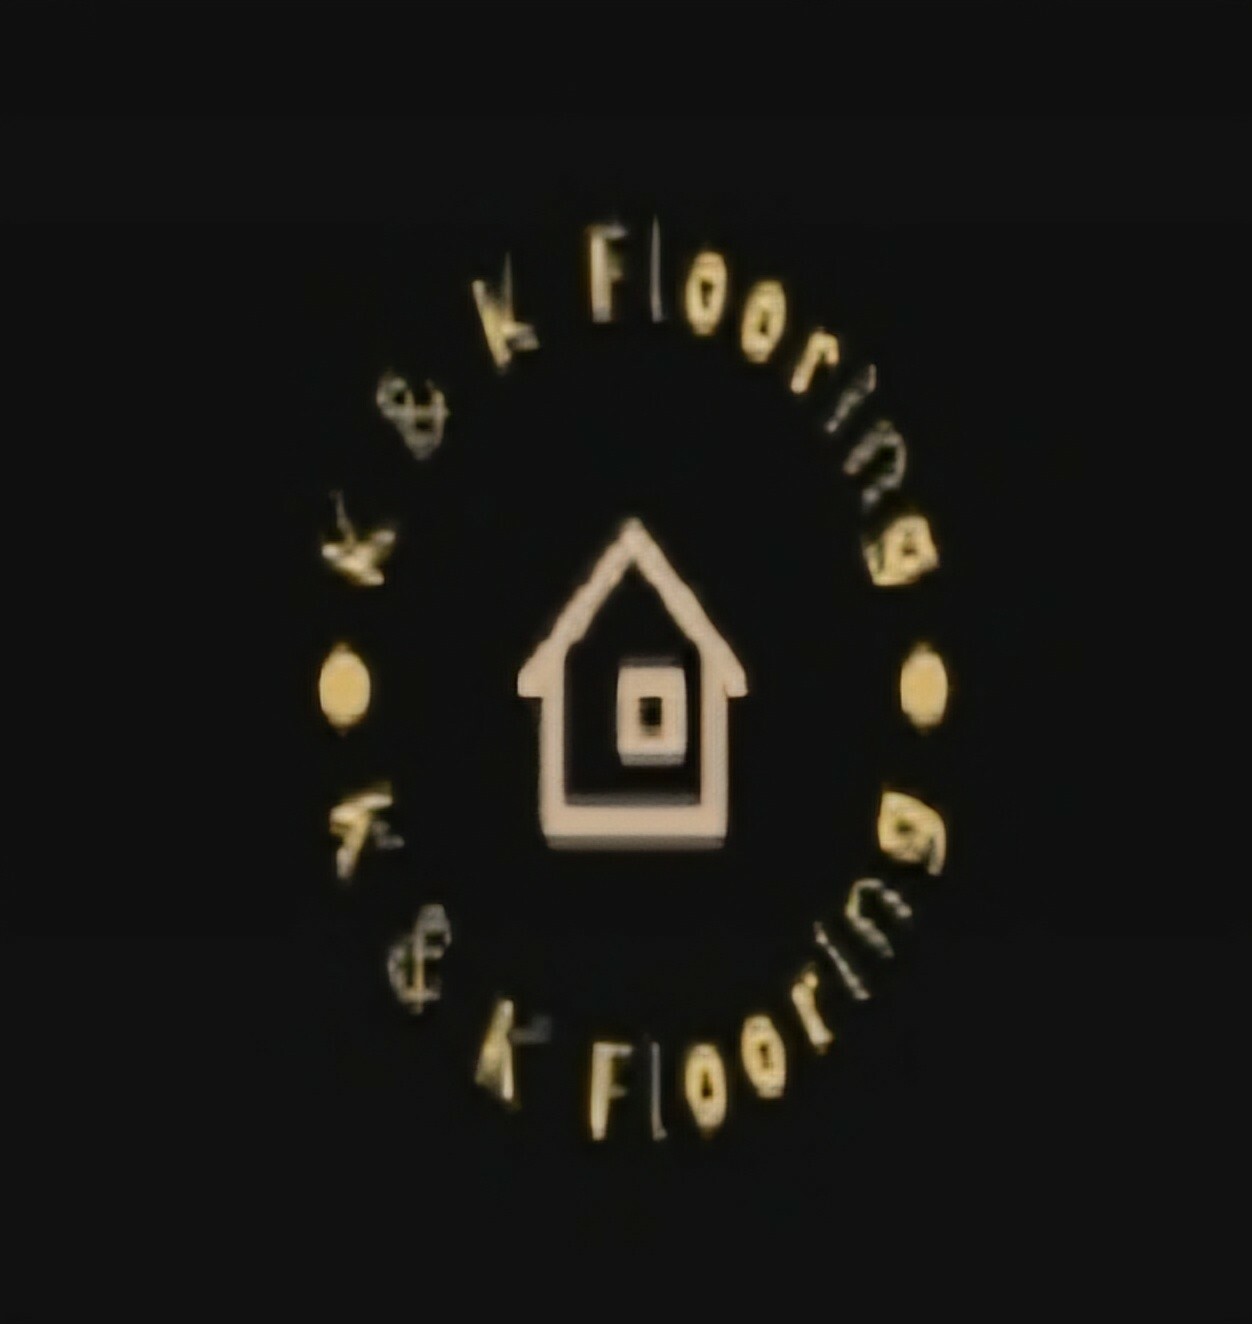 K & K Flooring's logo